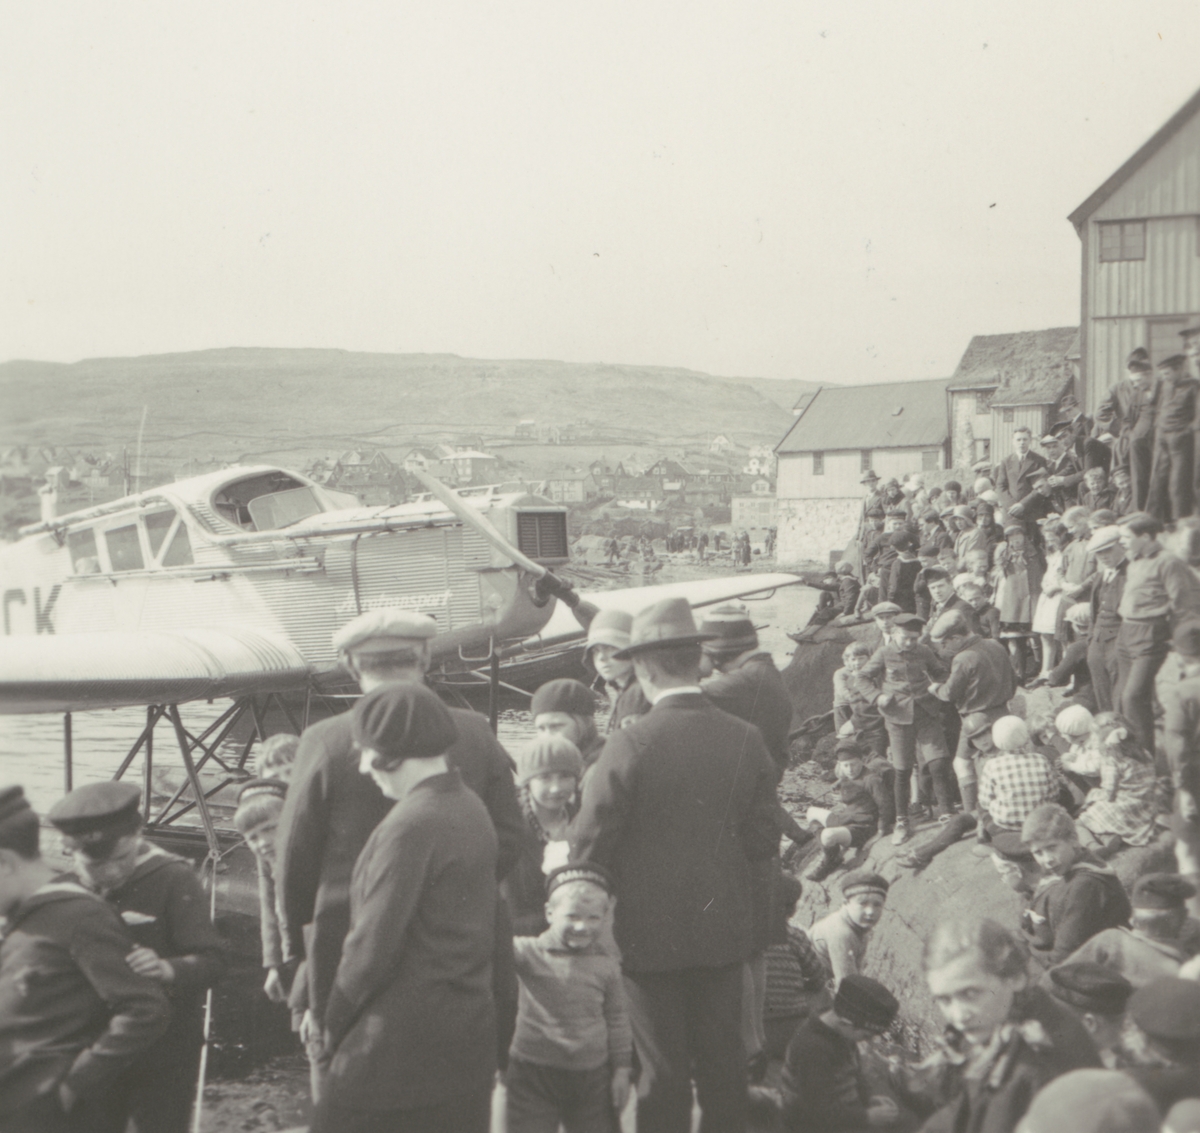 Fotografi från Albin Ahrenbergs resa till Grönland 1929. Motiv av en stor samling människor vid flygbåt i stad.